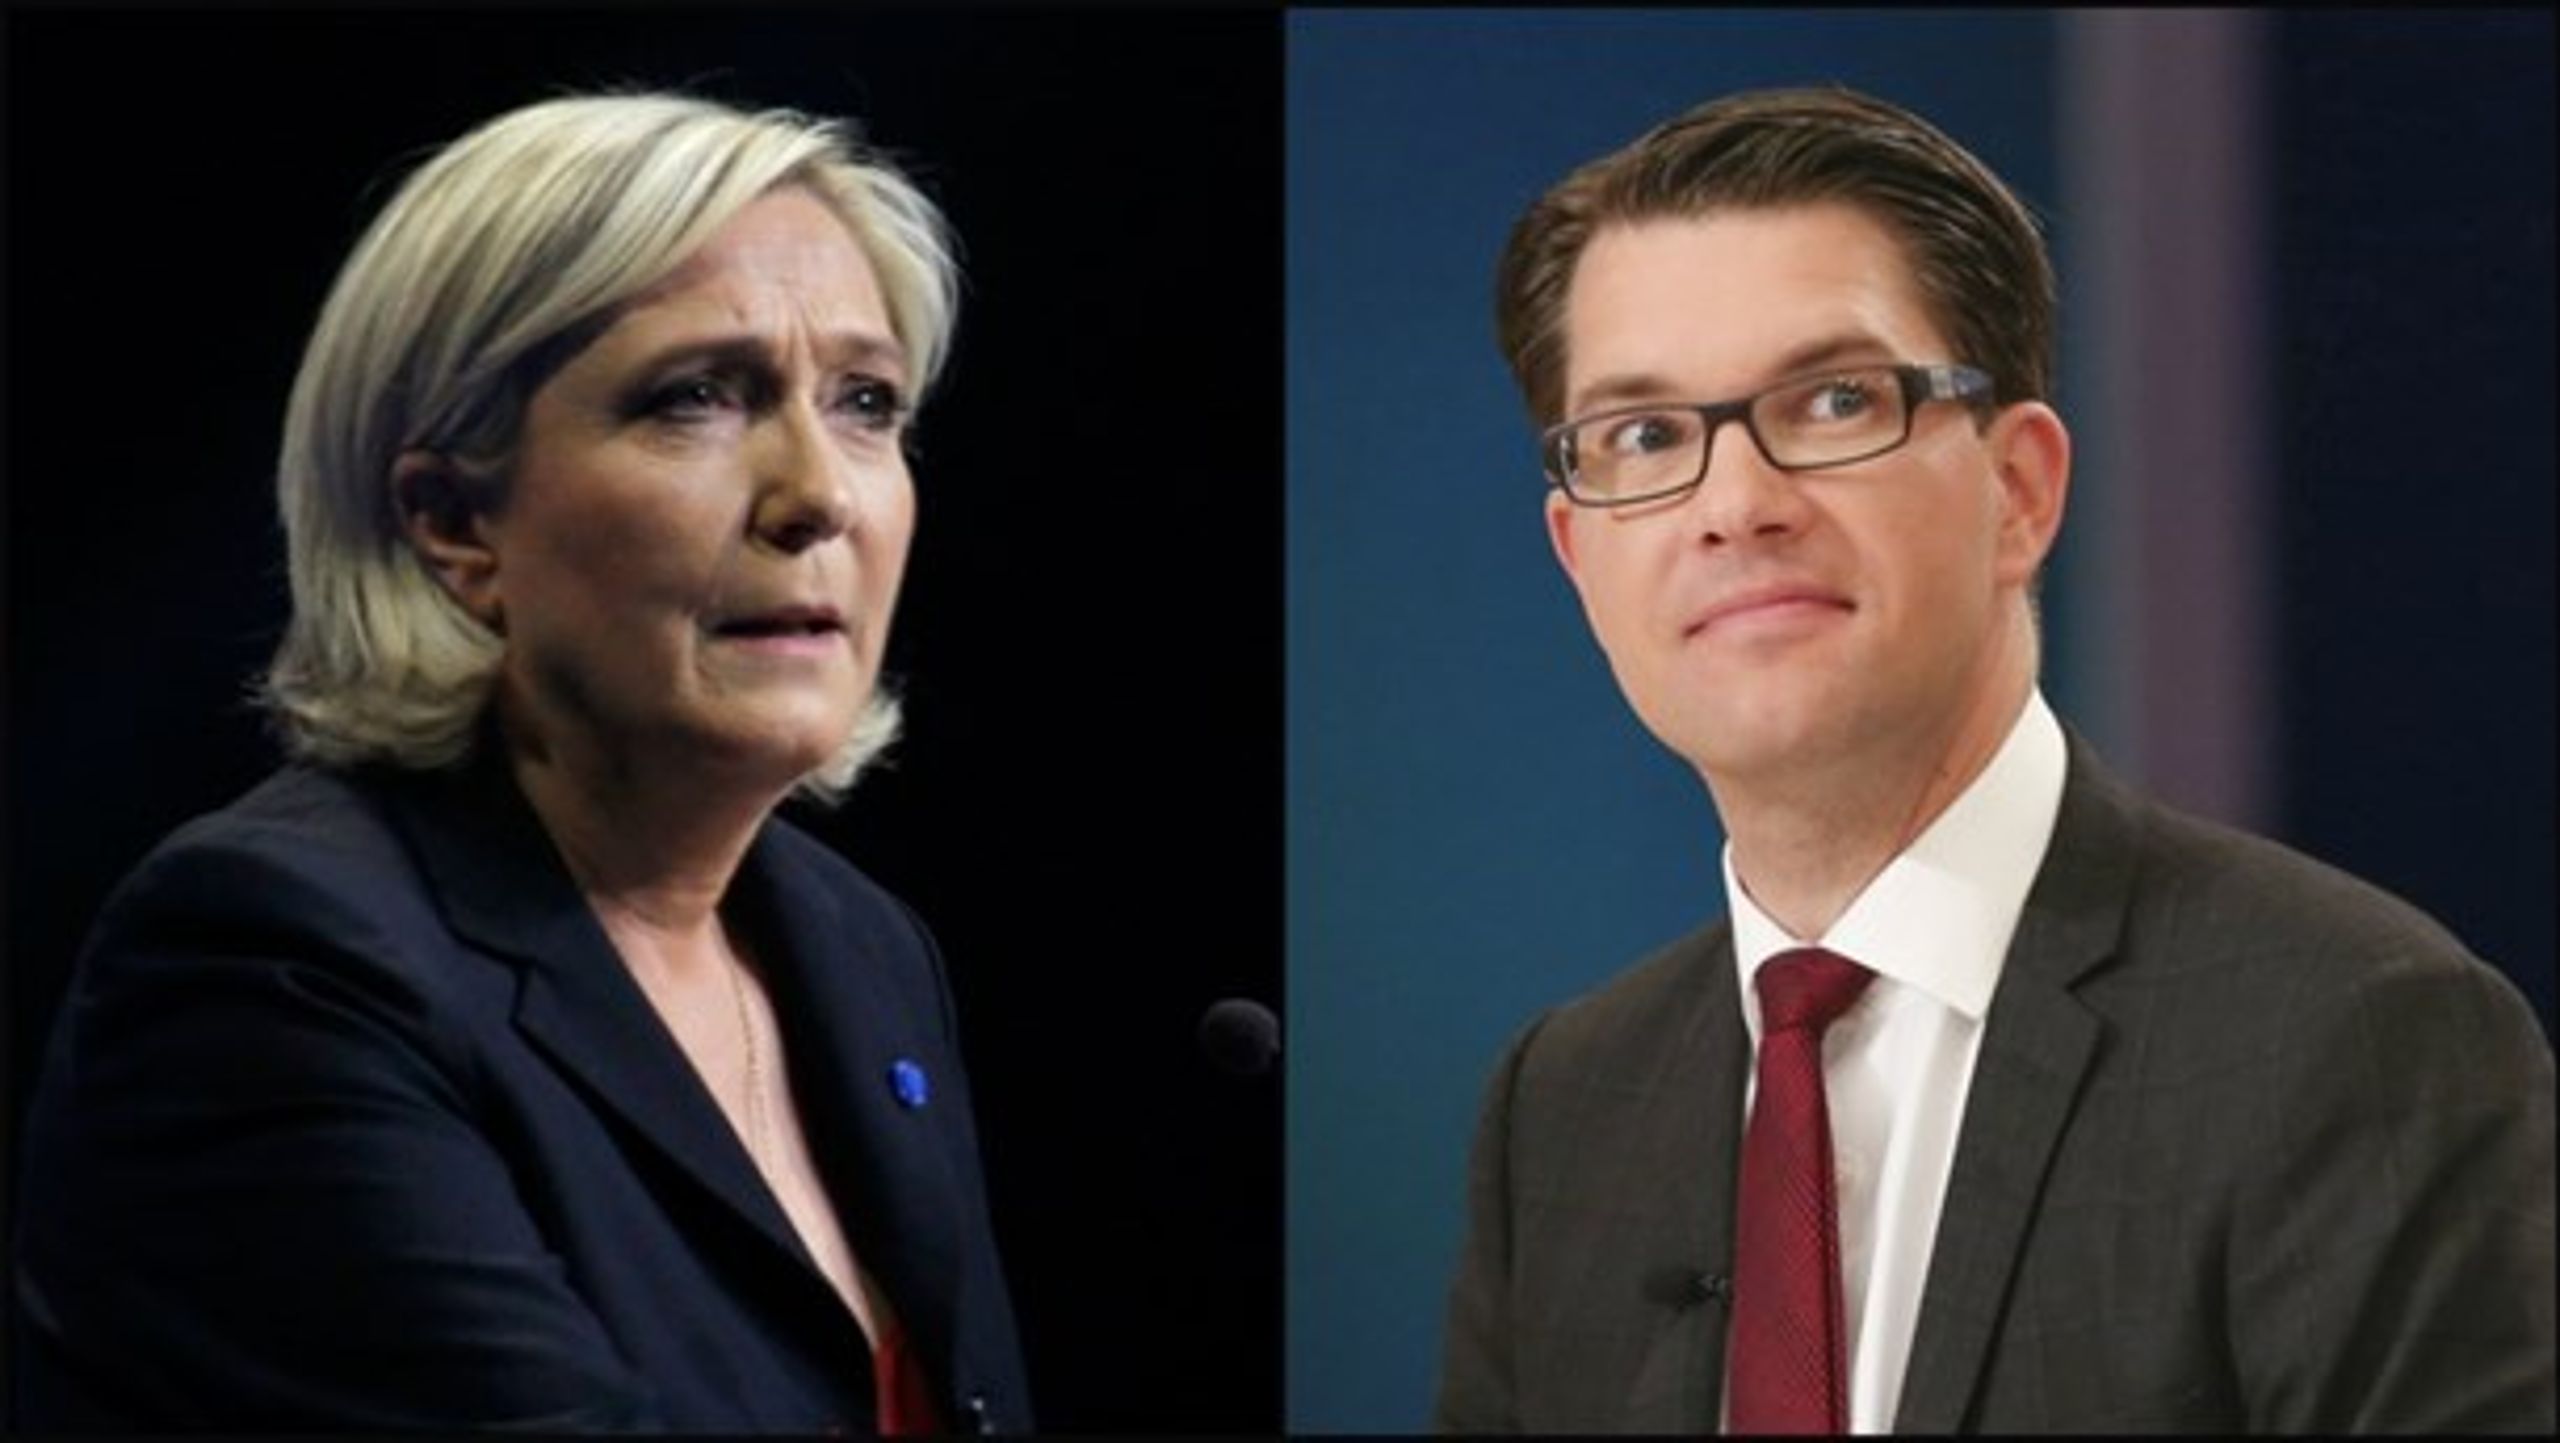 Marine Le Pen (Front National) og Jimmie Åkesson (Sverigedemokraterna) har begge&nbsp;det handicap, at deres partier&nbsp;blev dannet af veteraner fra det fascistiske og nazistiske miljø.&nbsp;<br>